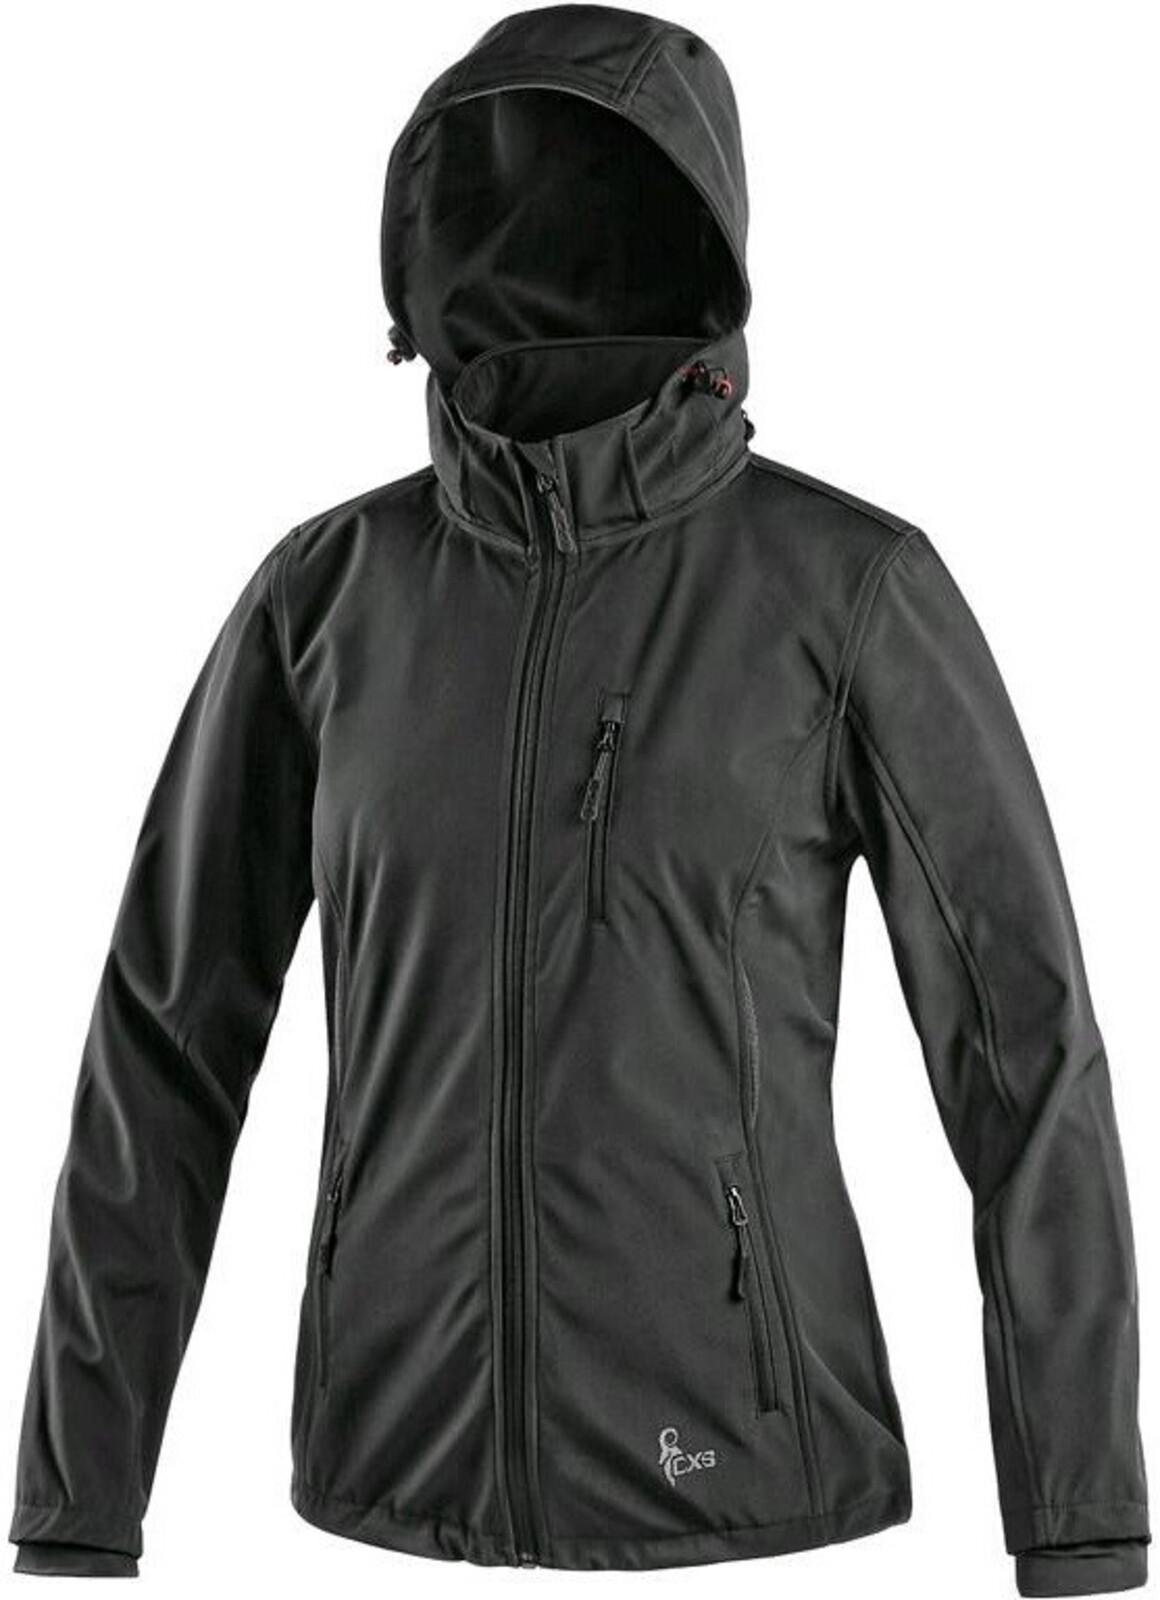 Dámska softshellová bunda CXS Digby - veľkosť: M, farba: čierna